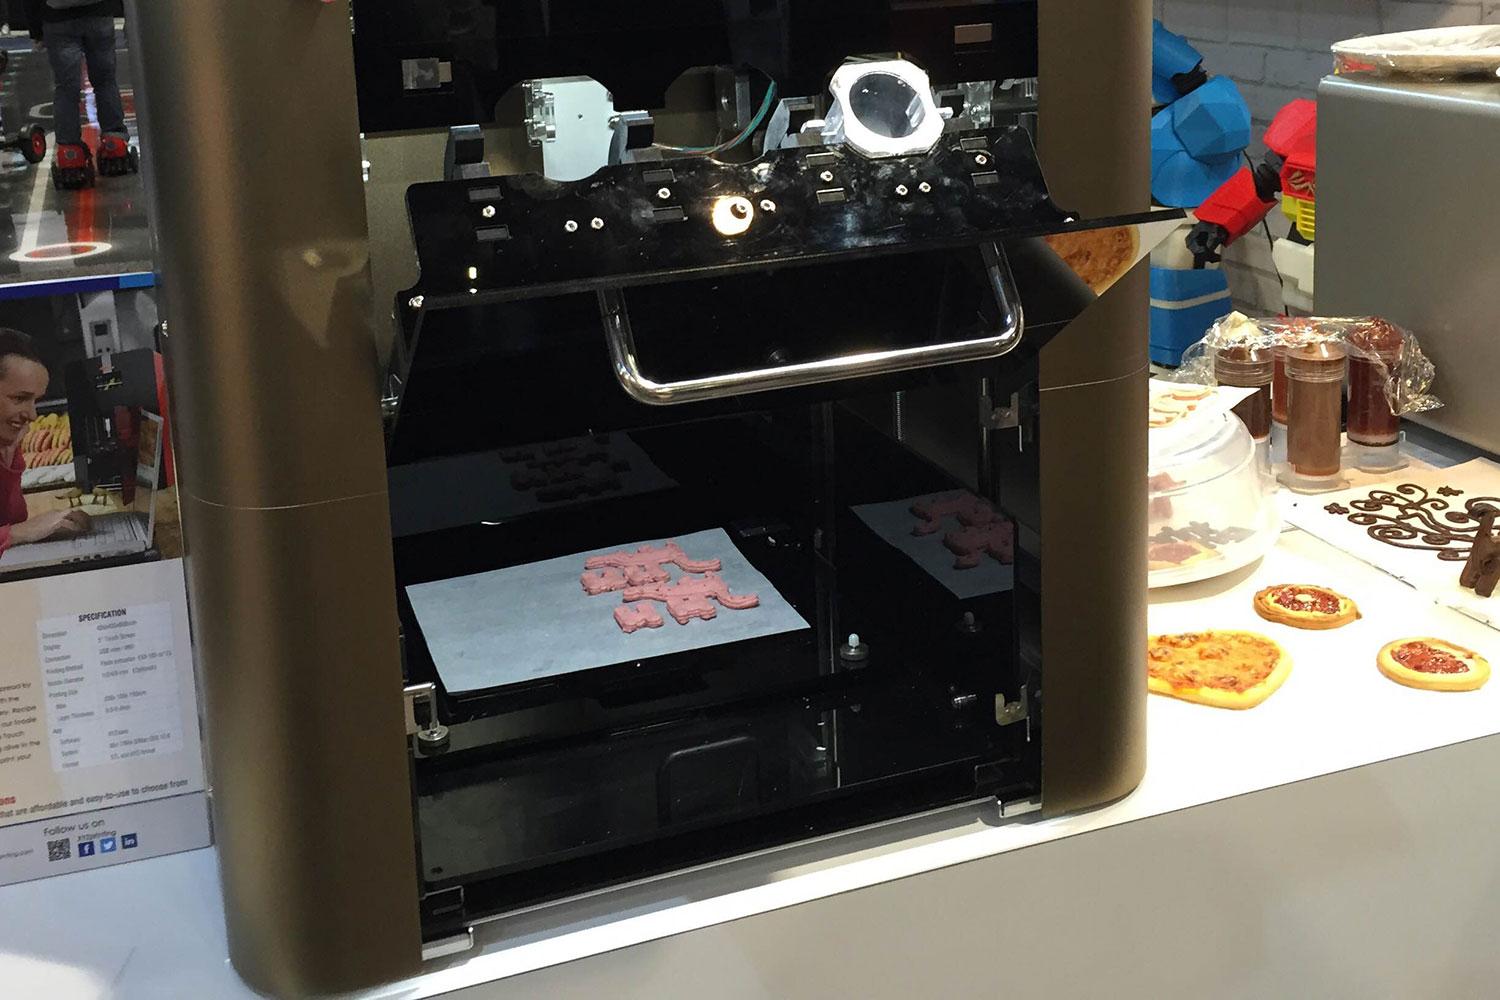 xyzprinting debuts 3d food printer at ces 2015 0113b